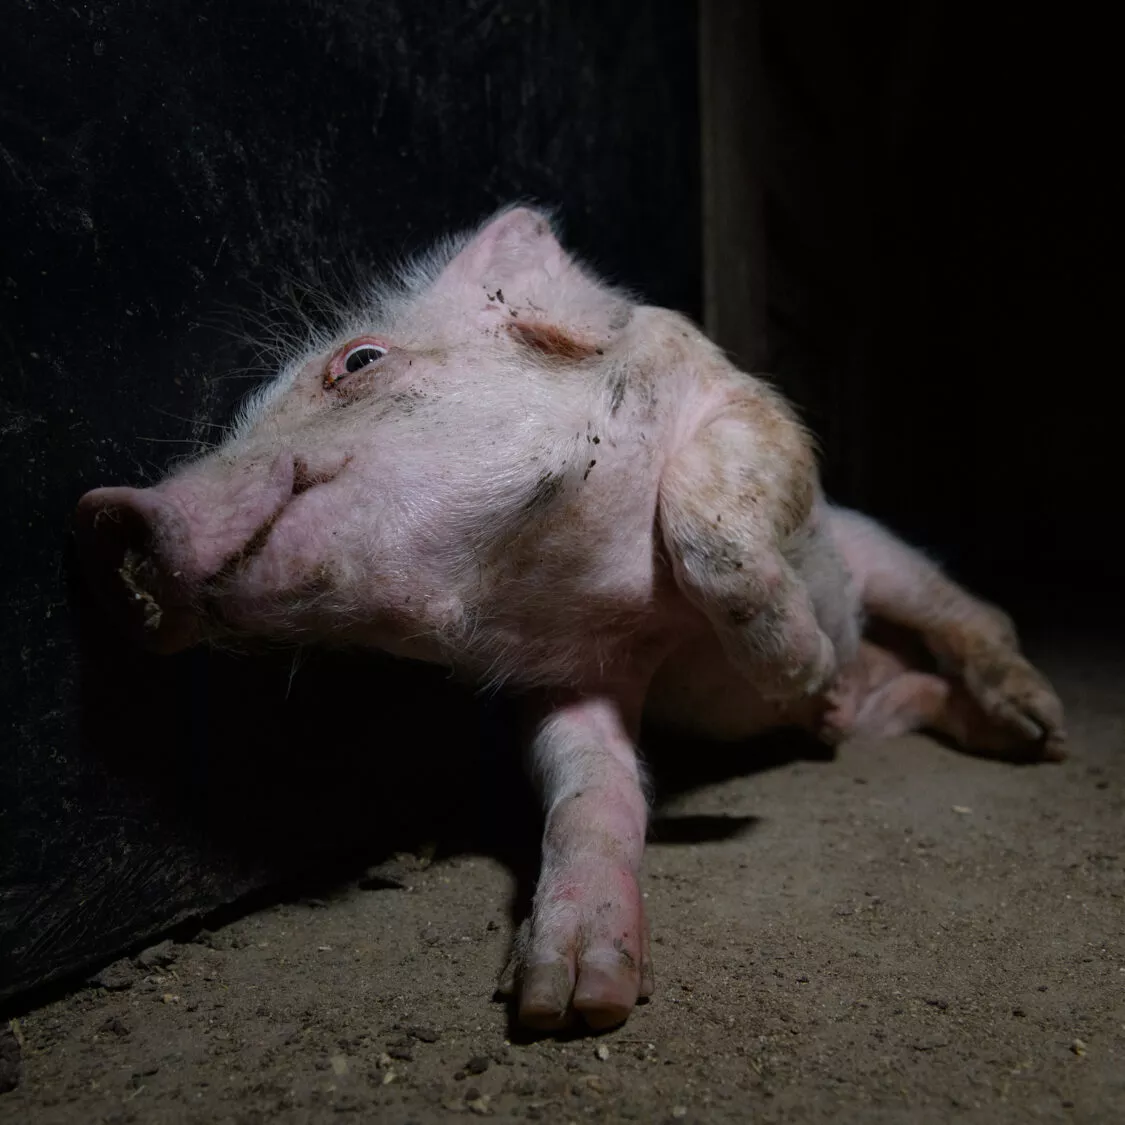 krankes Ferkel in einem spanischen Schweinebetrieb